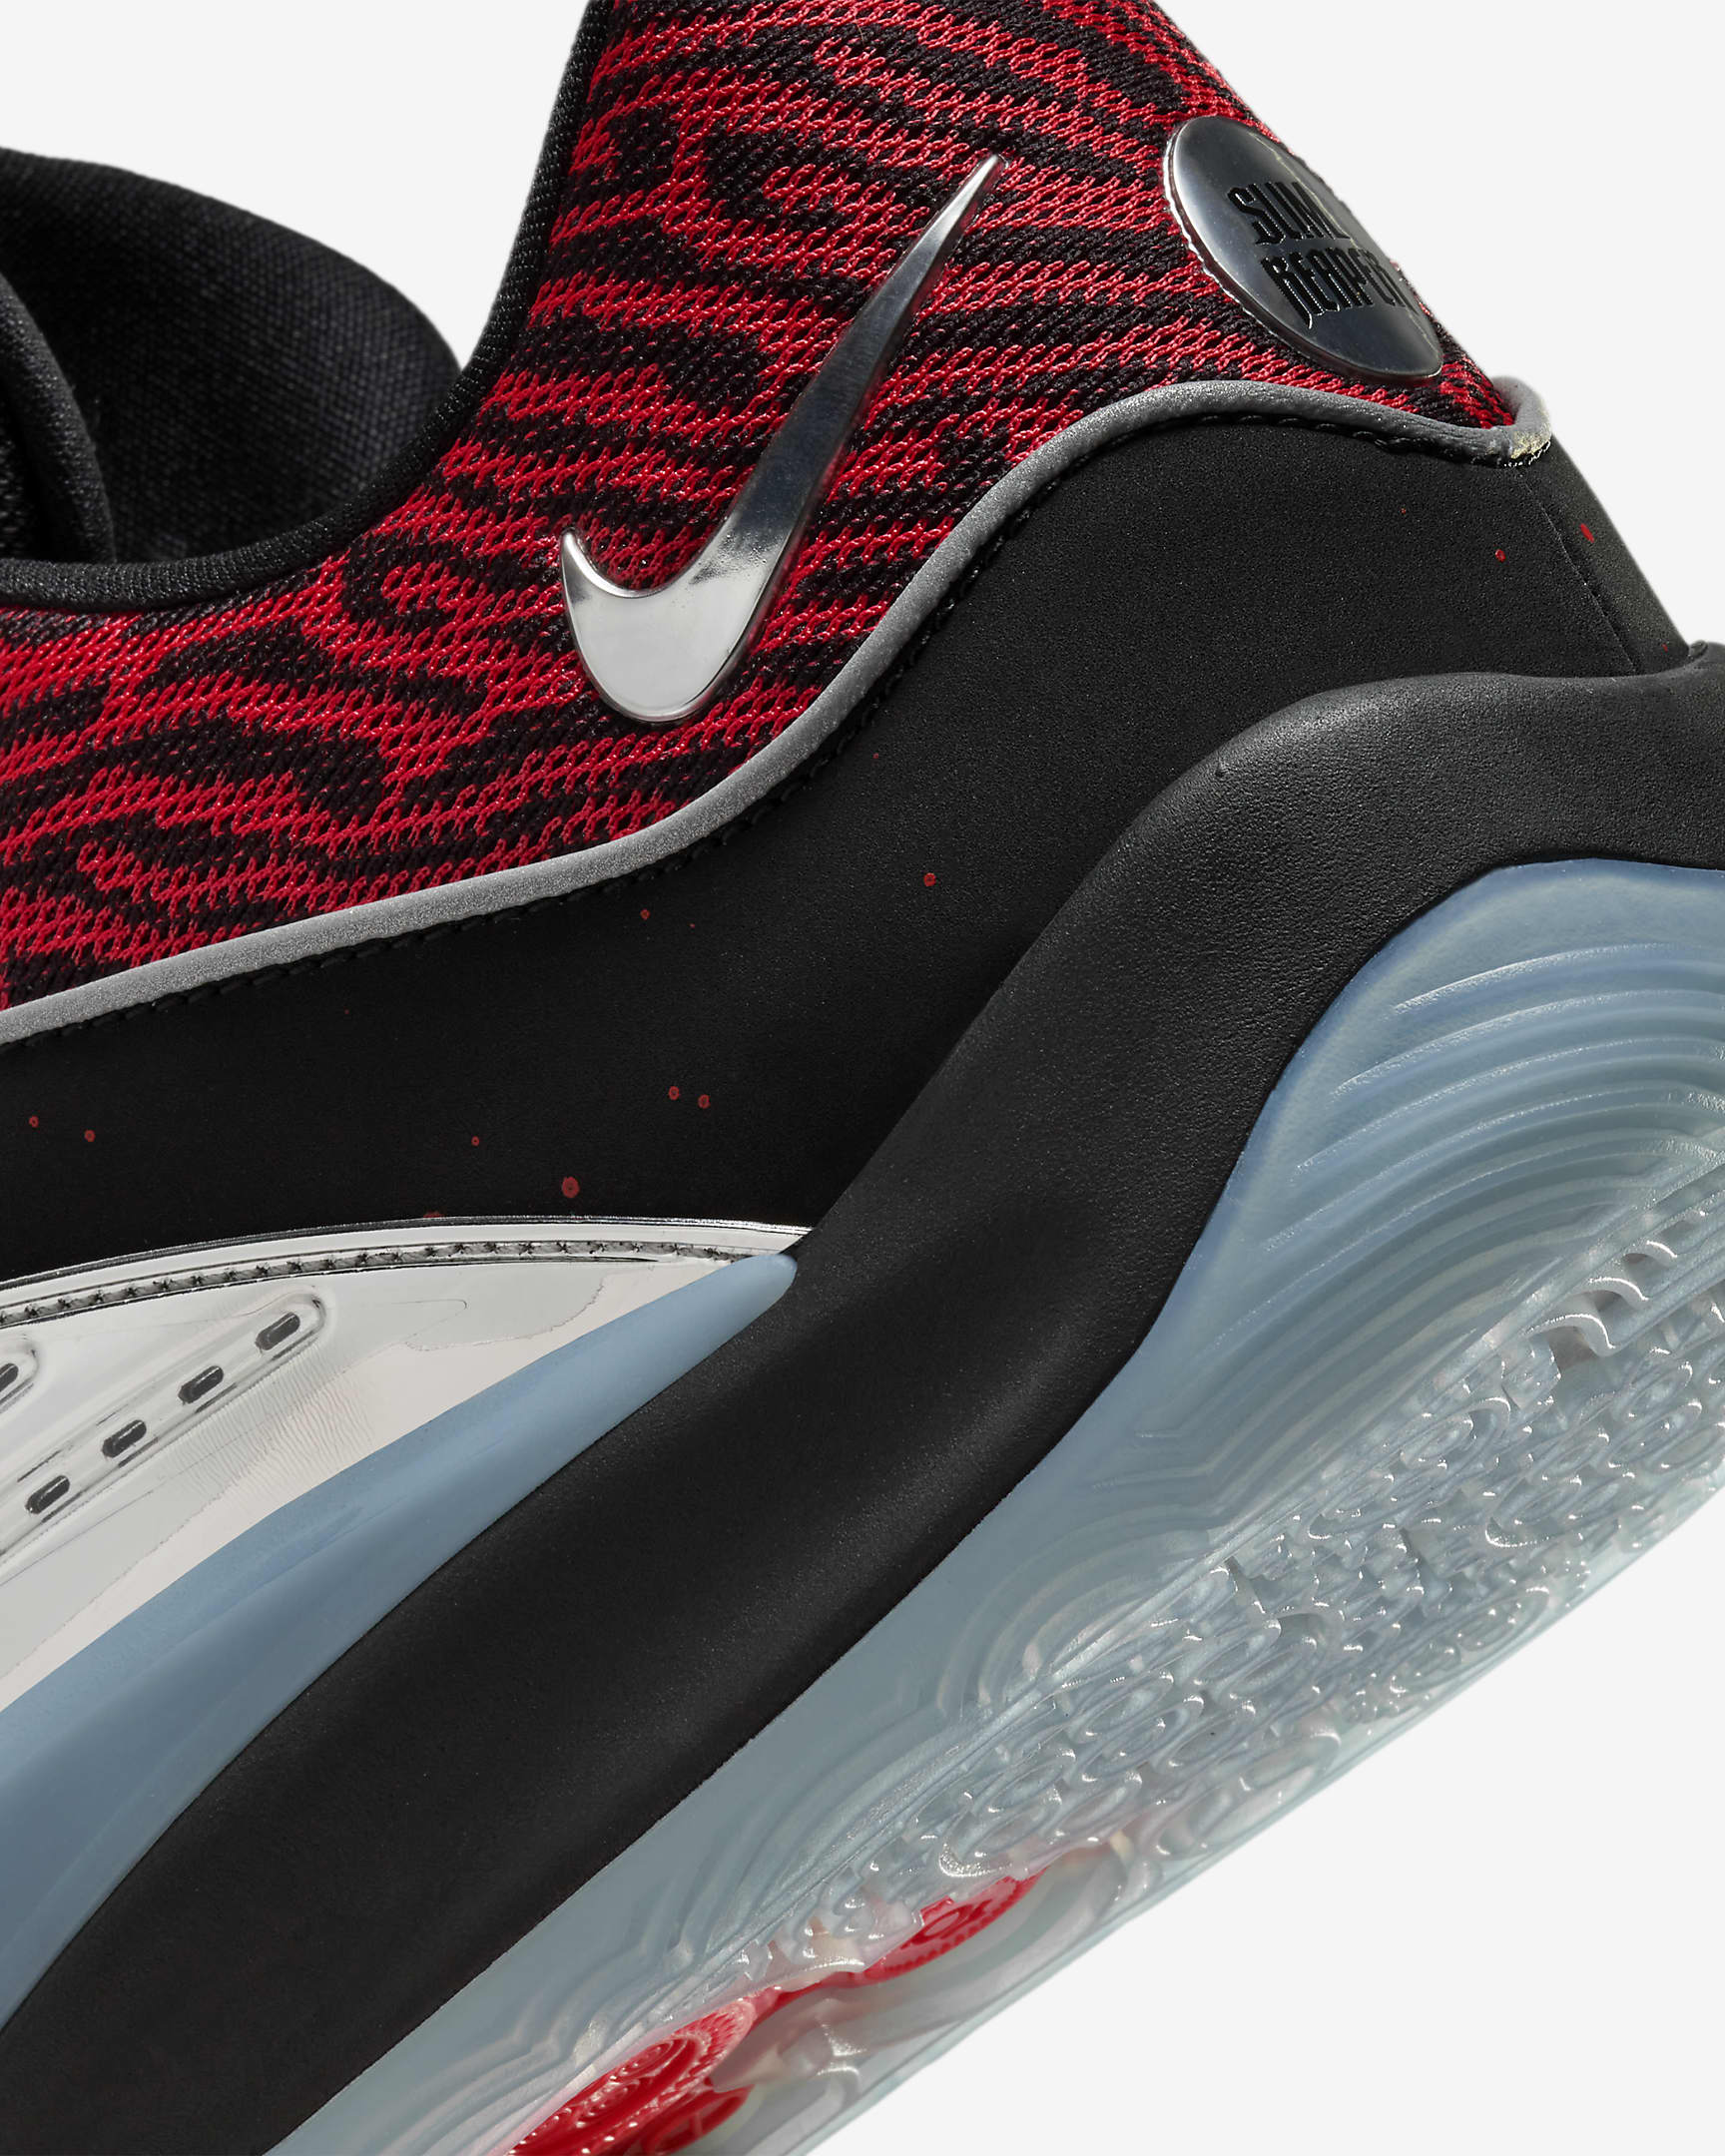 KD16 Basketball Shoes. Nike.com